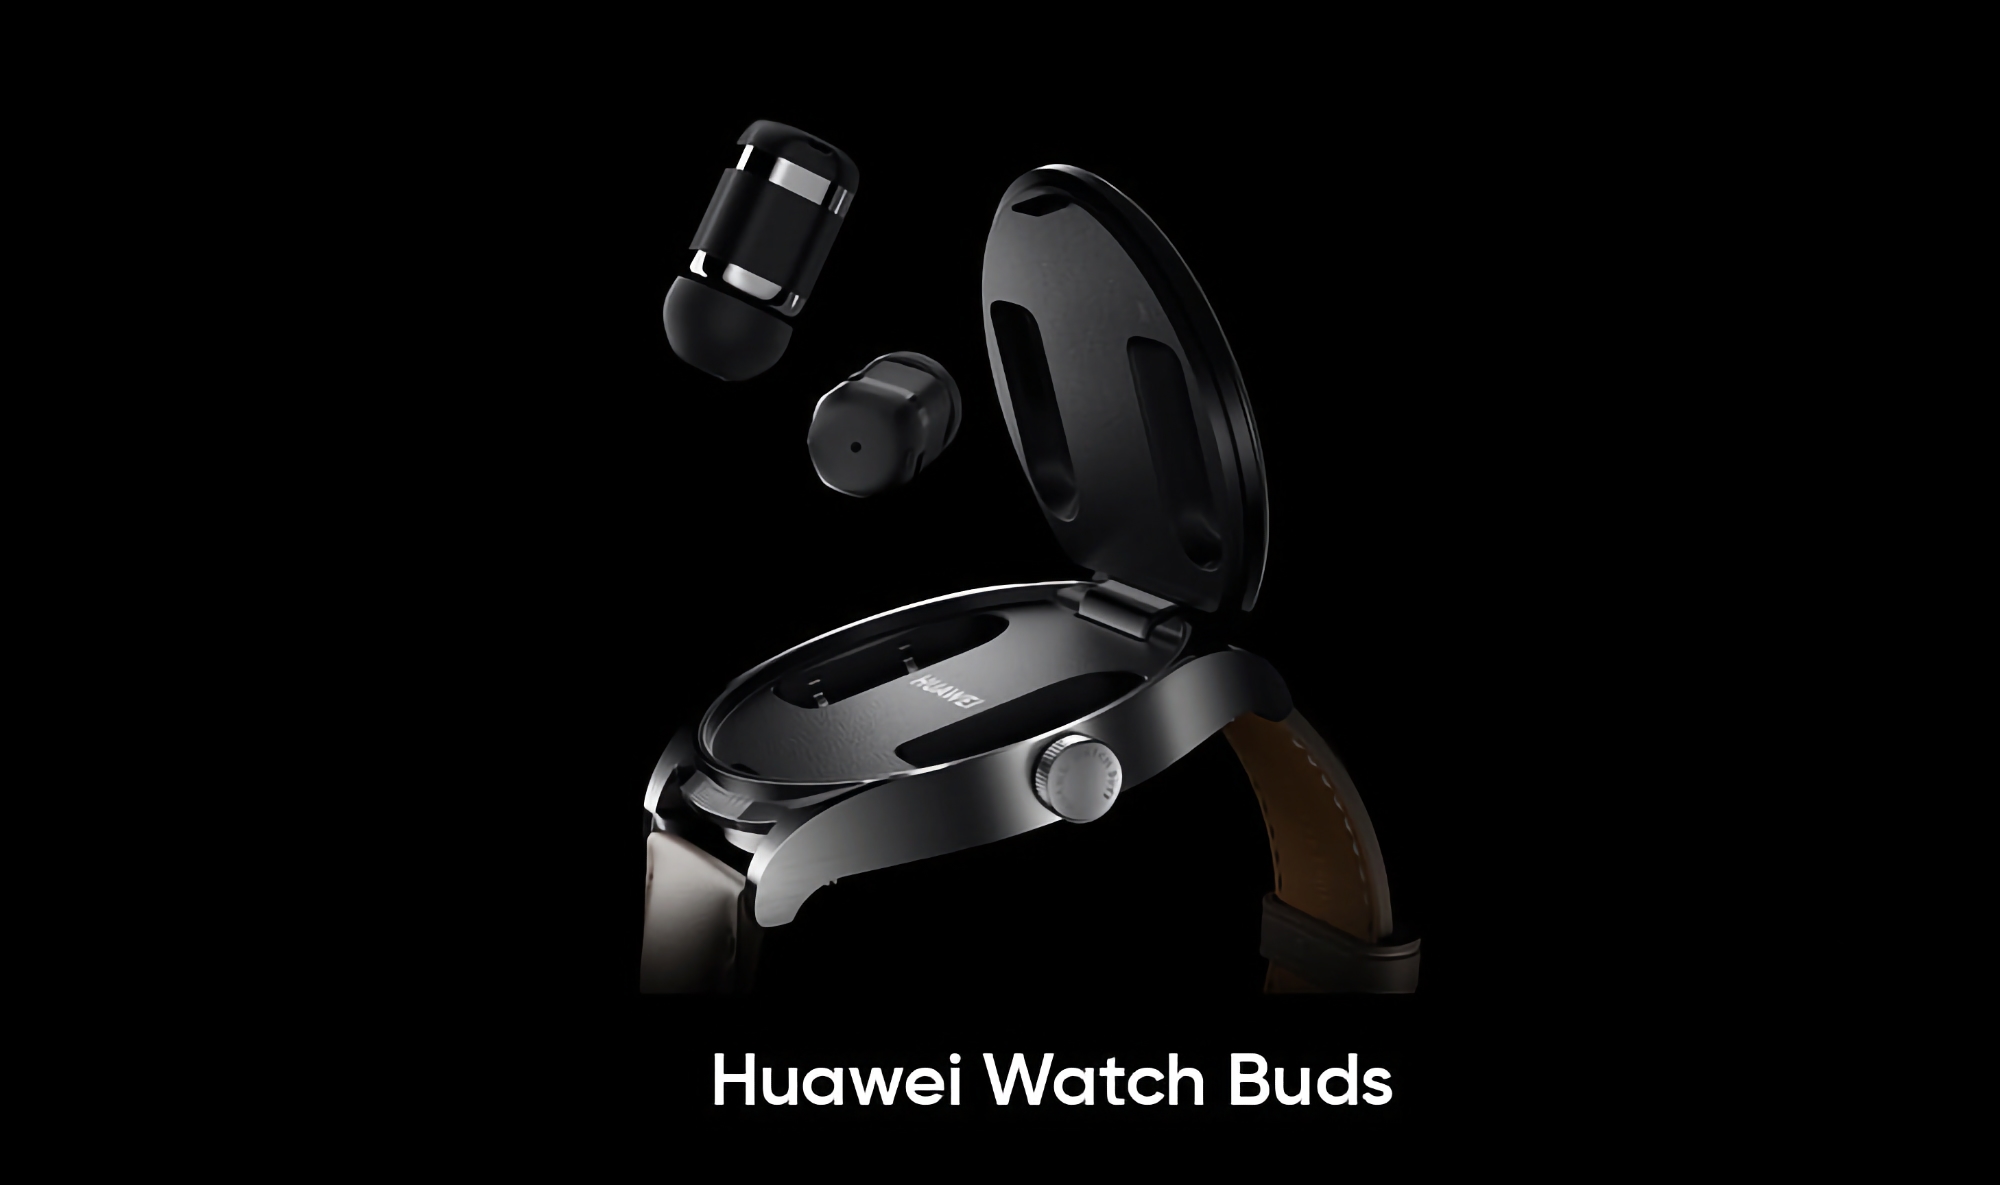 Voci di corridoio: Huawei Watch Buds con schermo AMOLED, sensore SpO2 e cuffie integrate sarà lanciato a livello globale